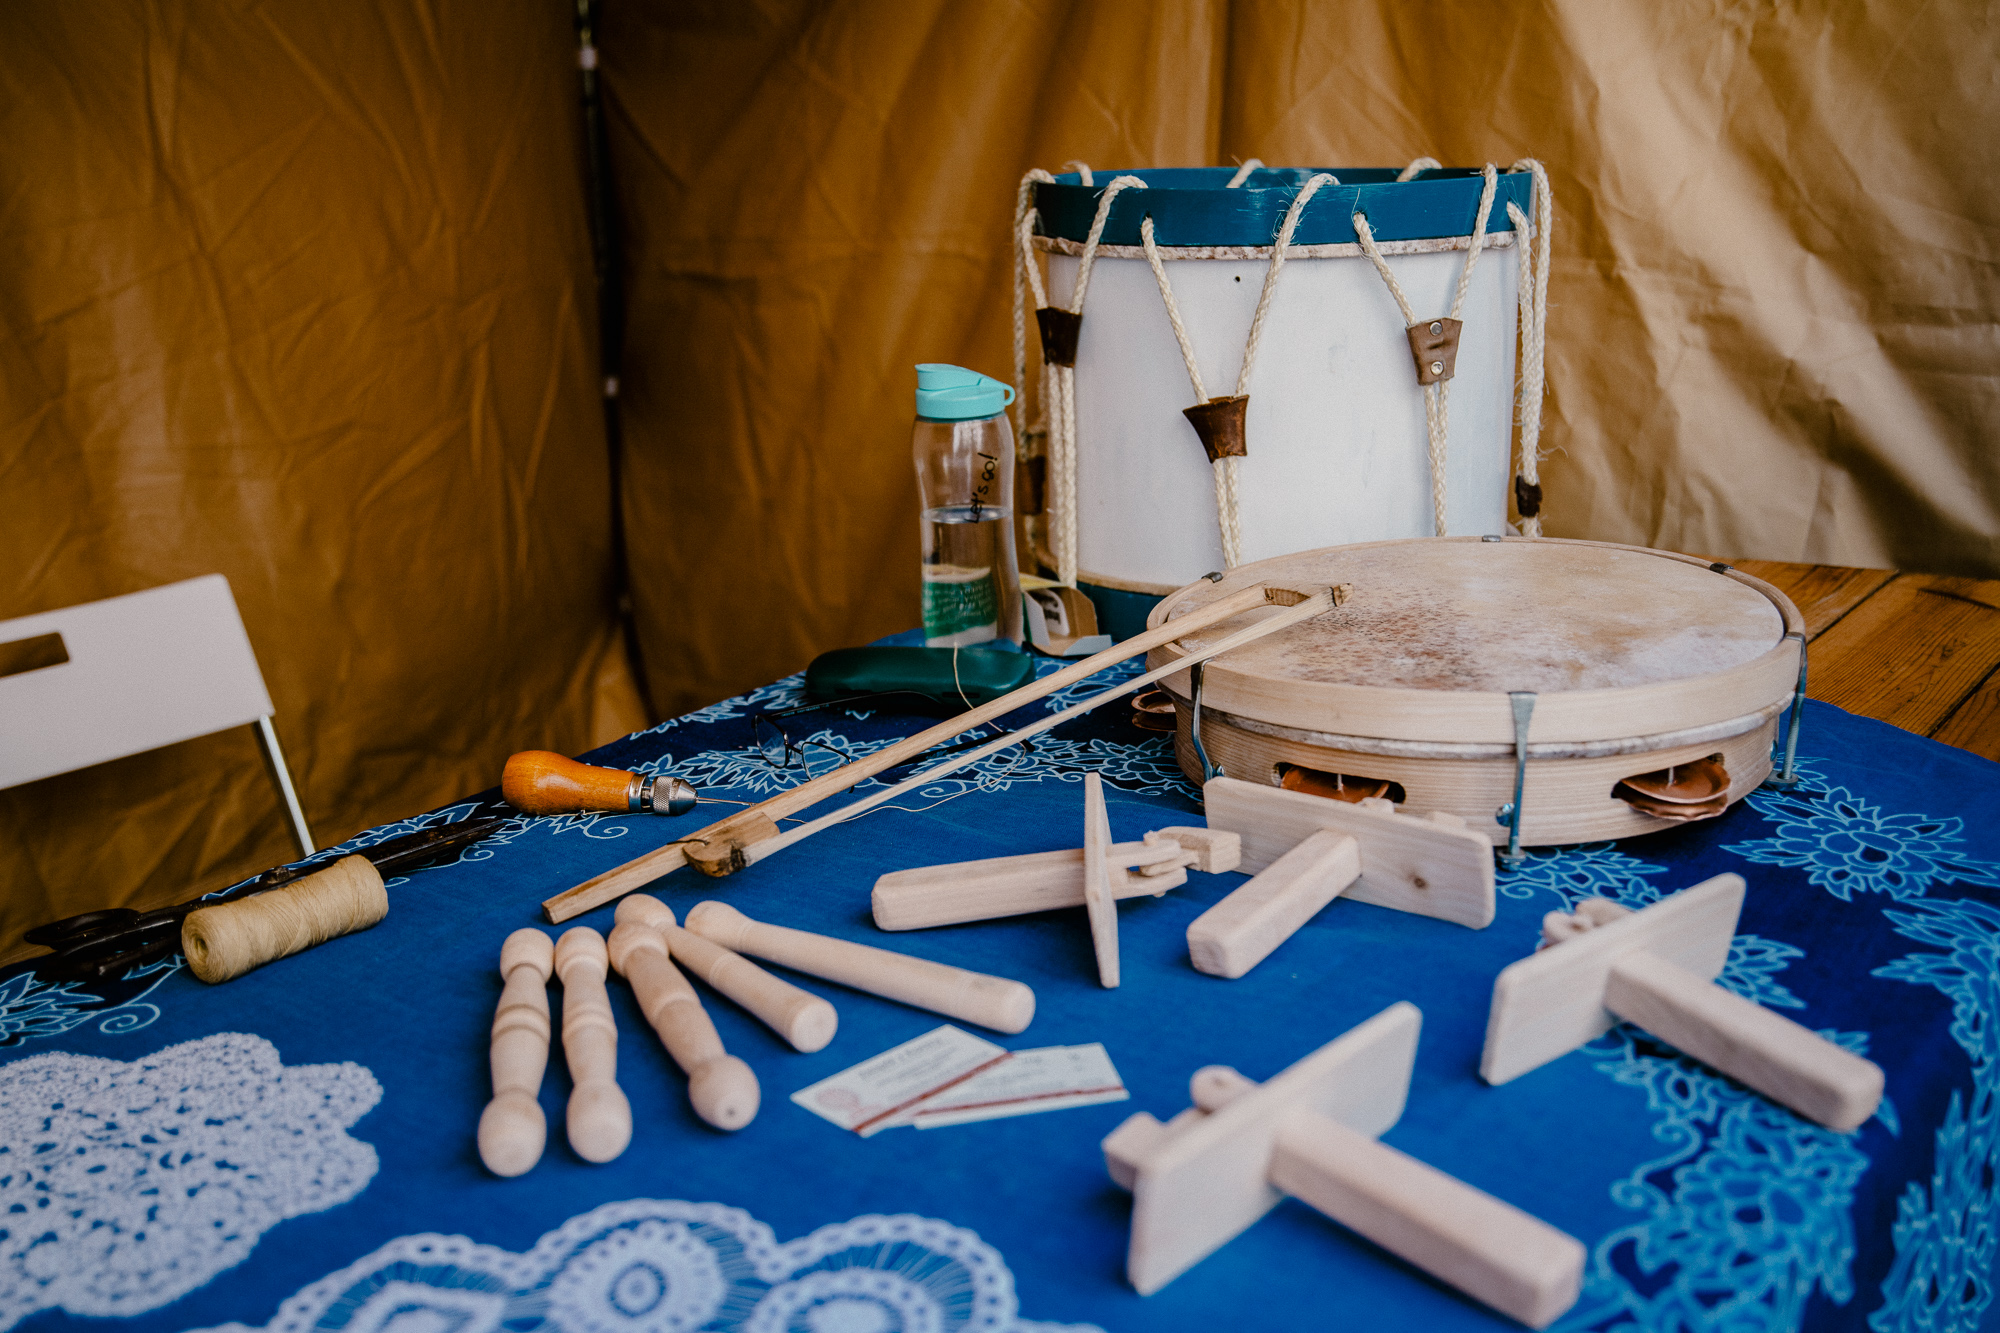 Drewniane instrumenty: bębenek, tamburyno, kołatki.